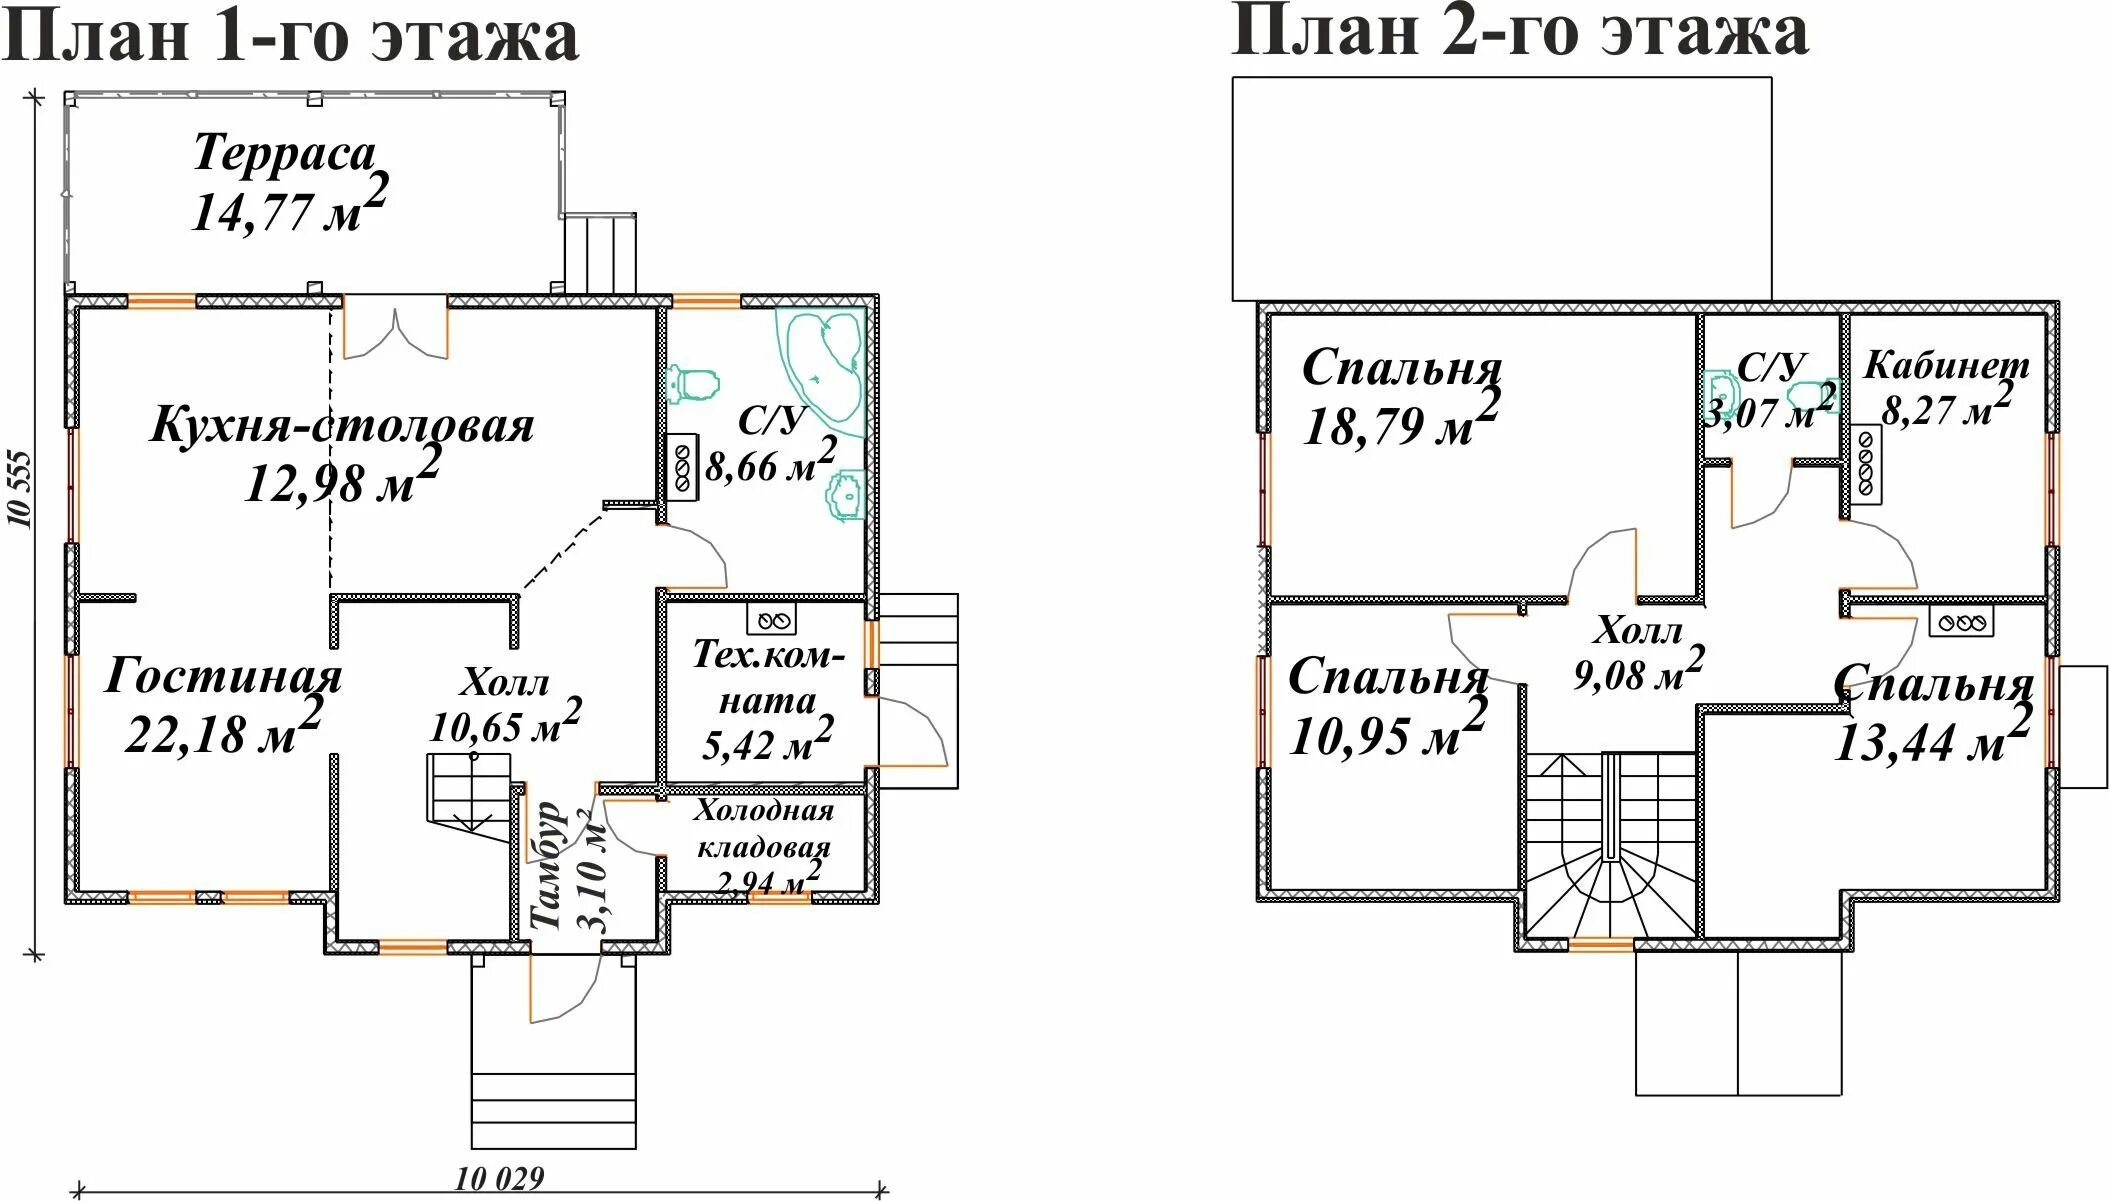 Схемы плана дома 2 этажа. Схема частного 2-х этажного дома. Проект частного дома двухэтажного чертежи. Поэтажный план дома 2 этажа.